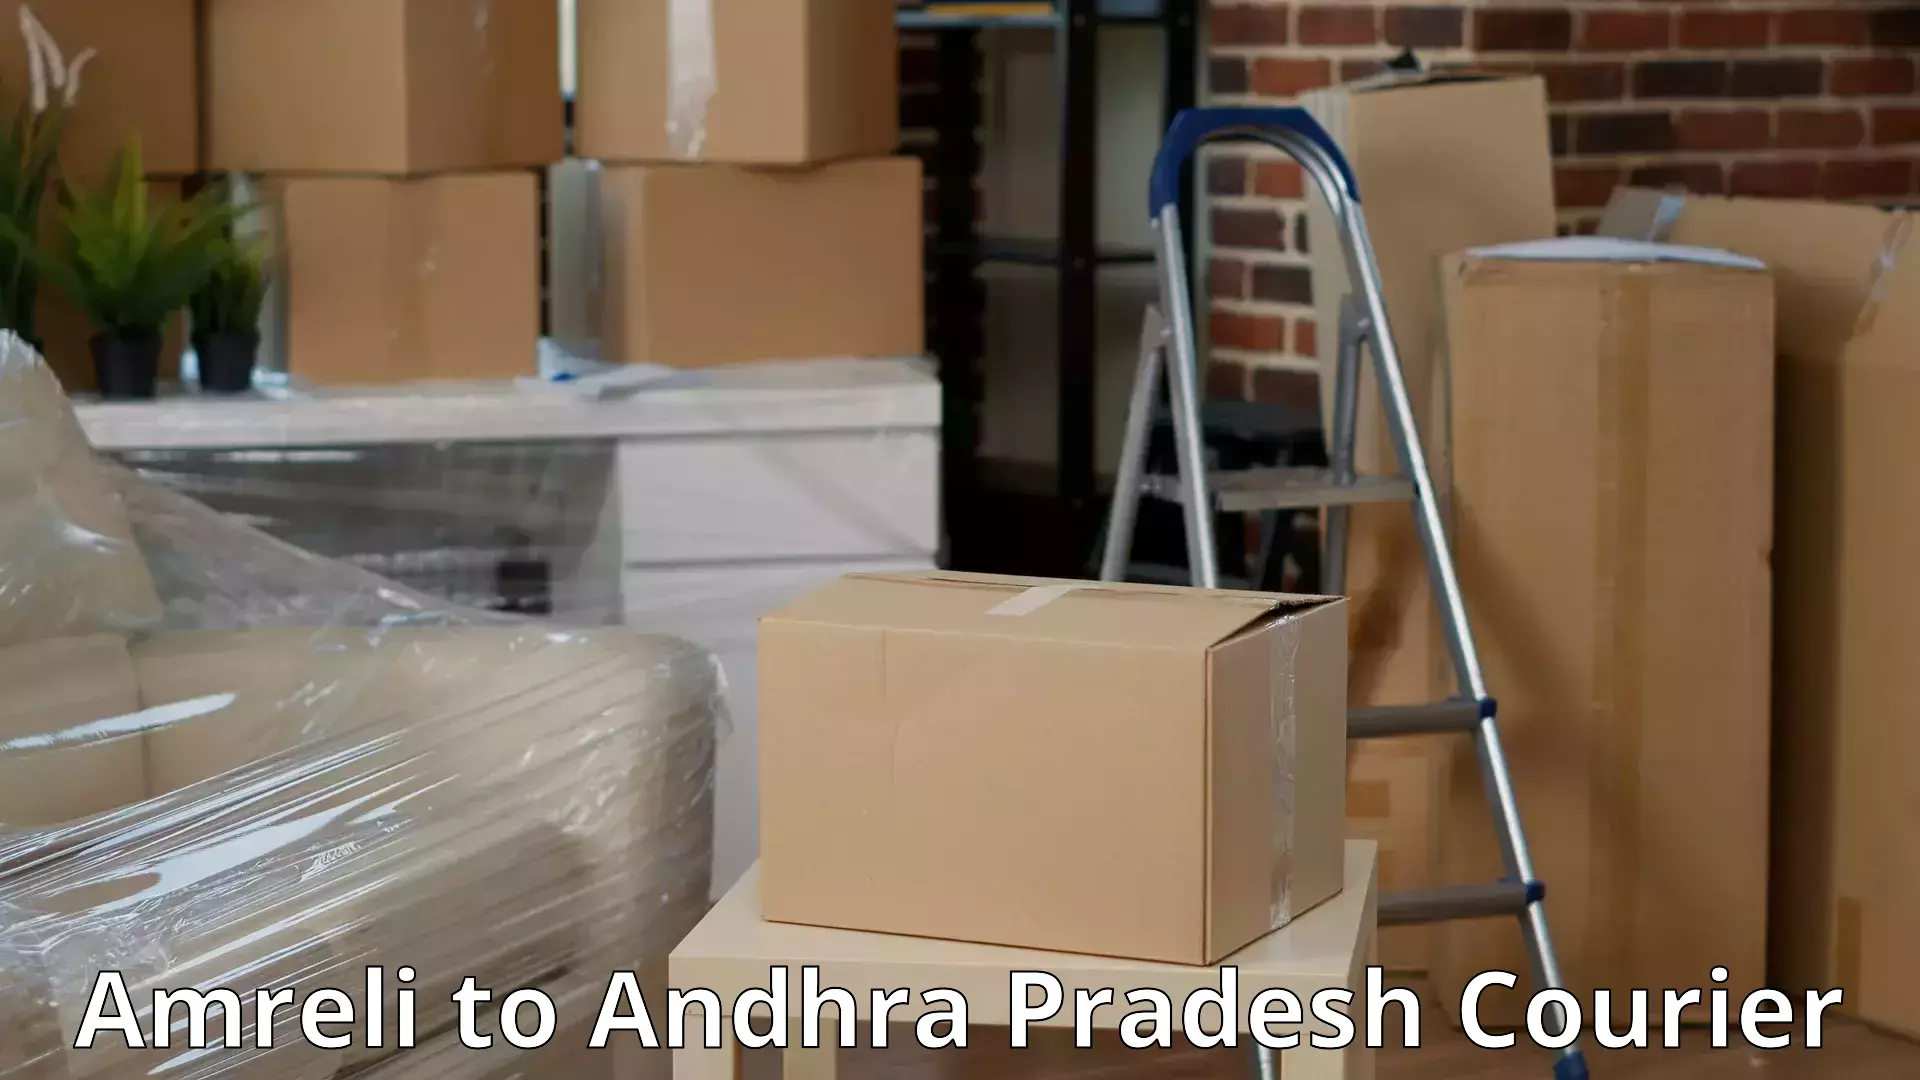 Professional furniture movers Amreli to Gajapathinagaram